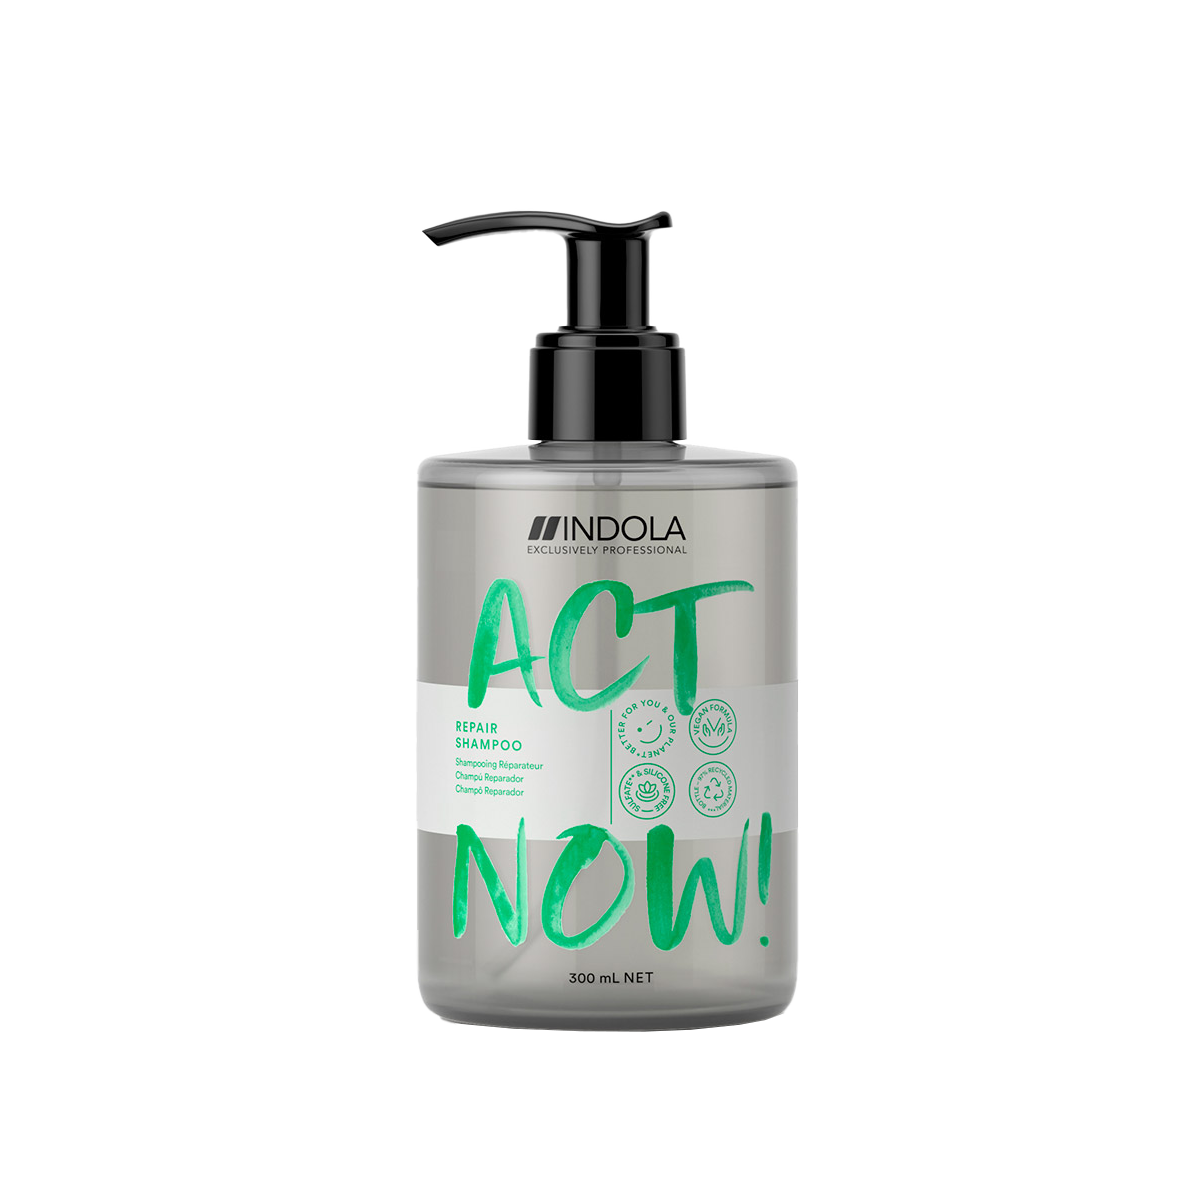 Indola Act Now! регенерирующий шампунь для волос, 300 мл